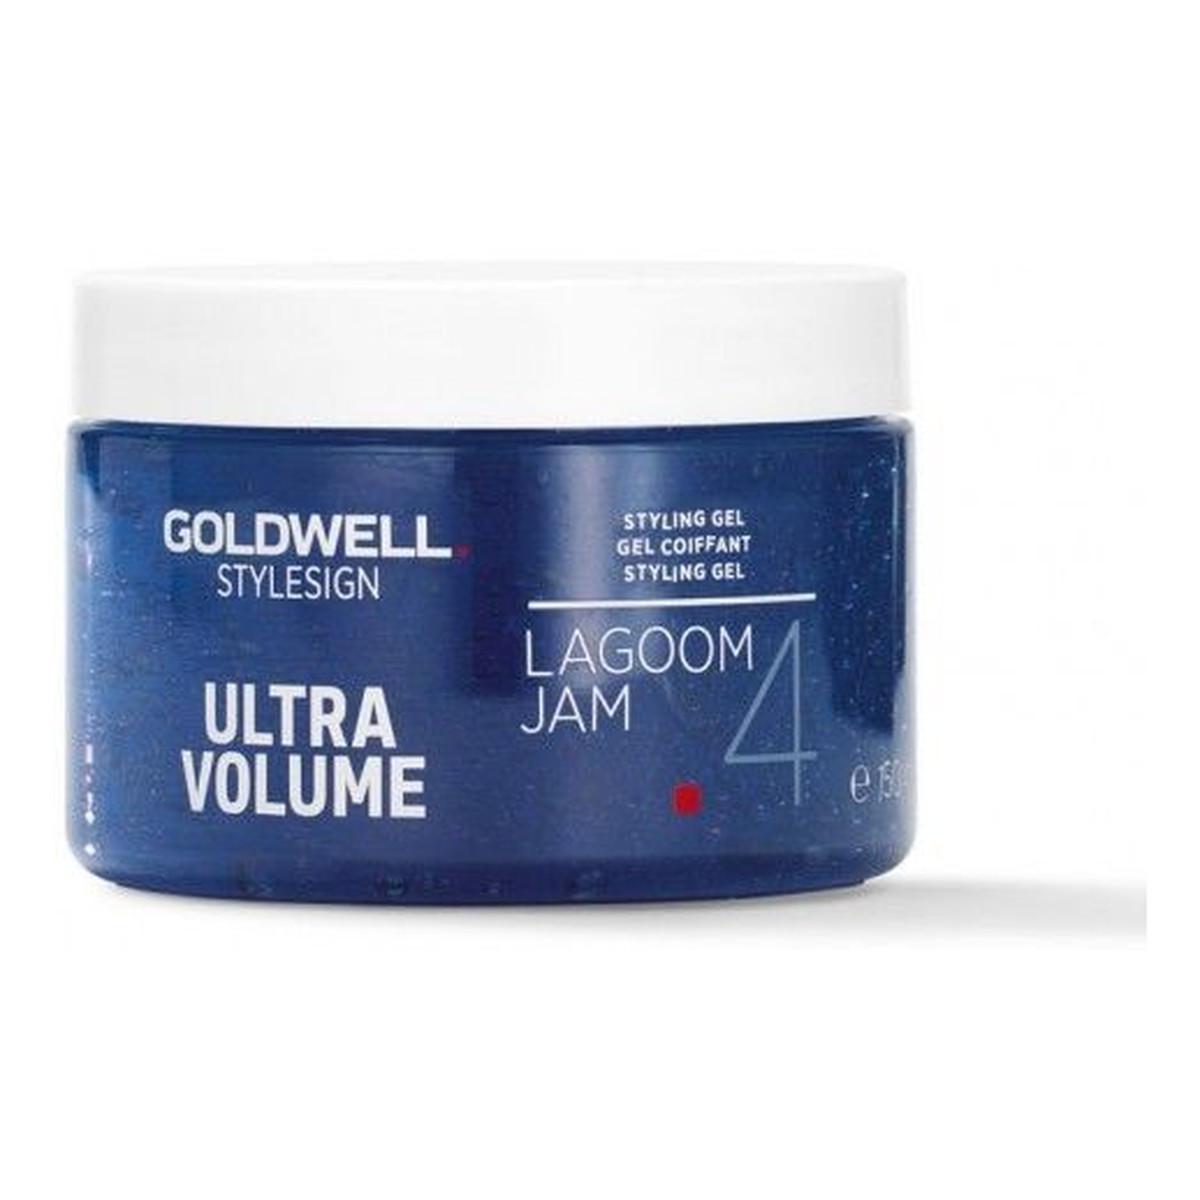 Goldwell StyleSign Ultra Volume Lagoom Jam żel do stylizacji włosów 150ml